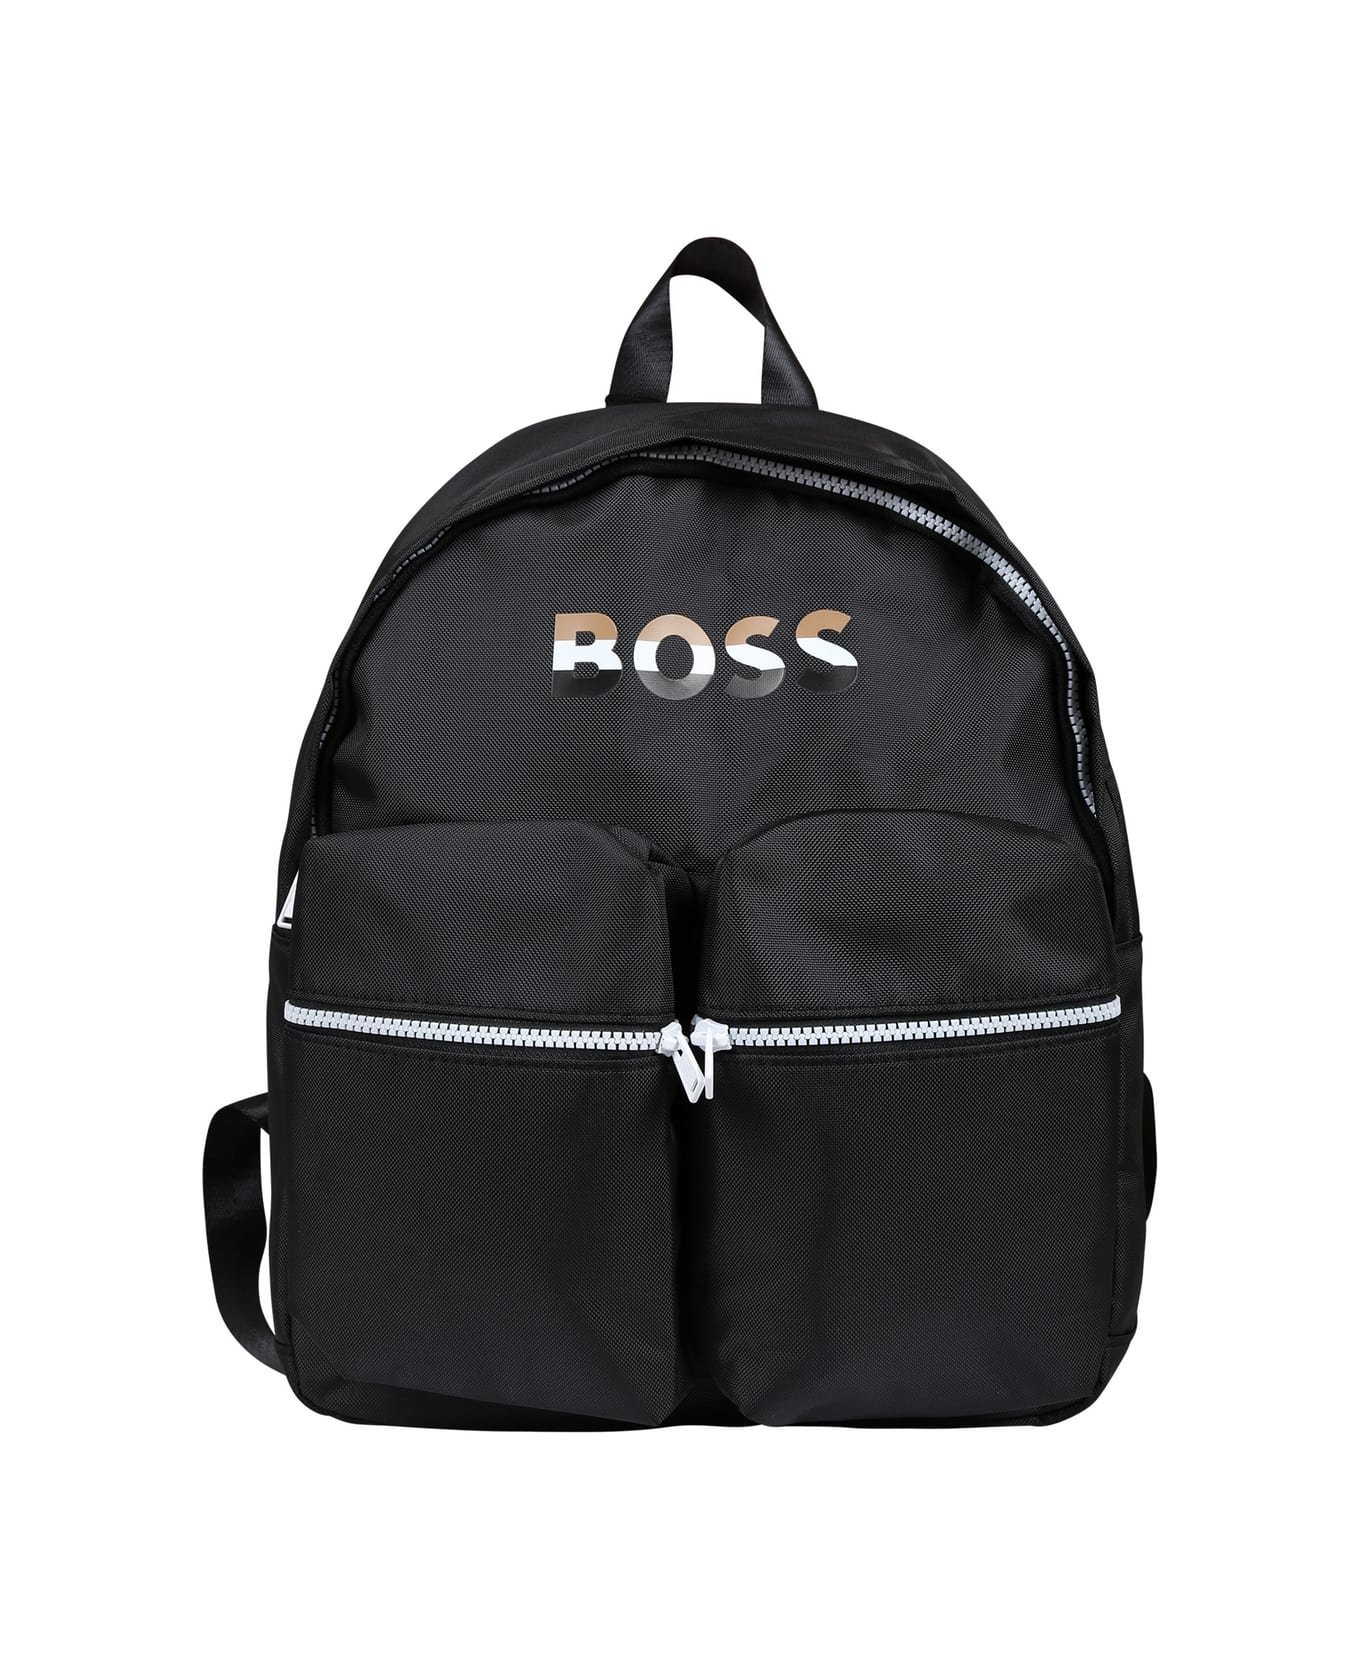 Hugo Boss Black Backpack For Boy With Logo - Black アクセサリー＆ギフト